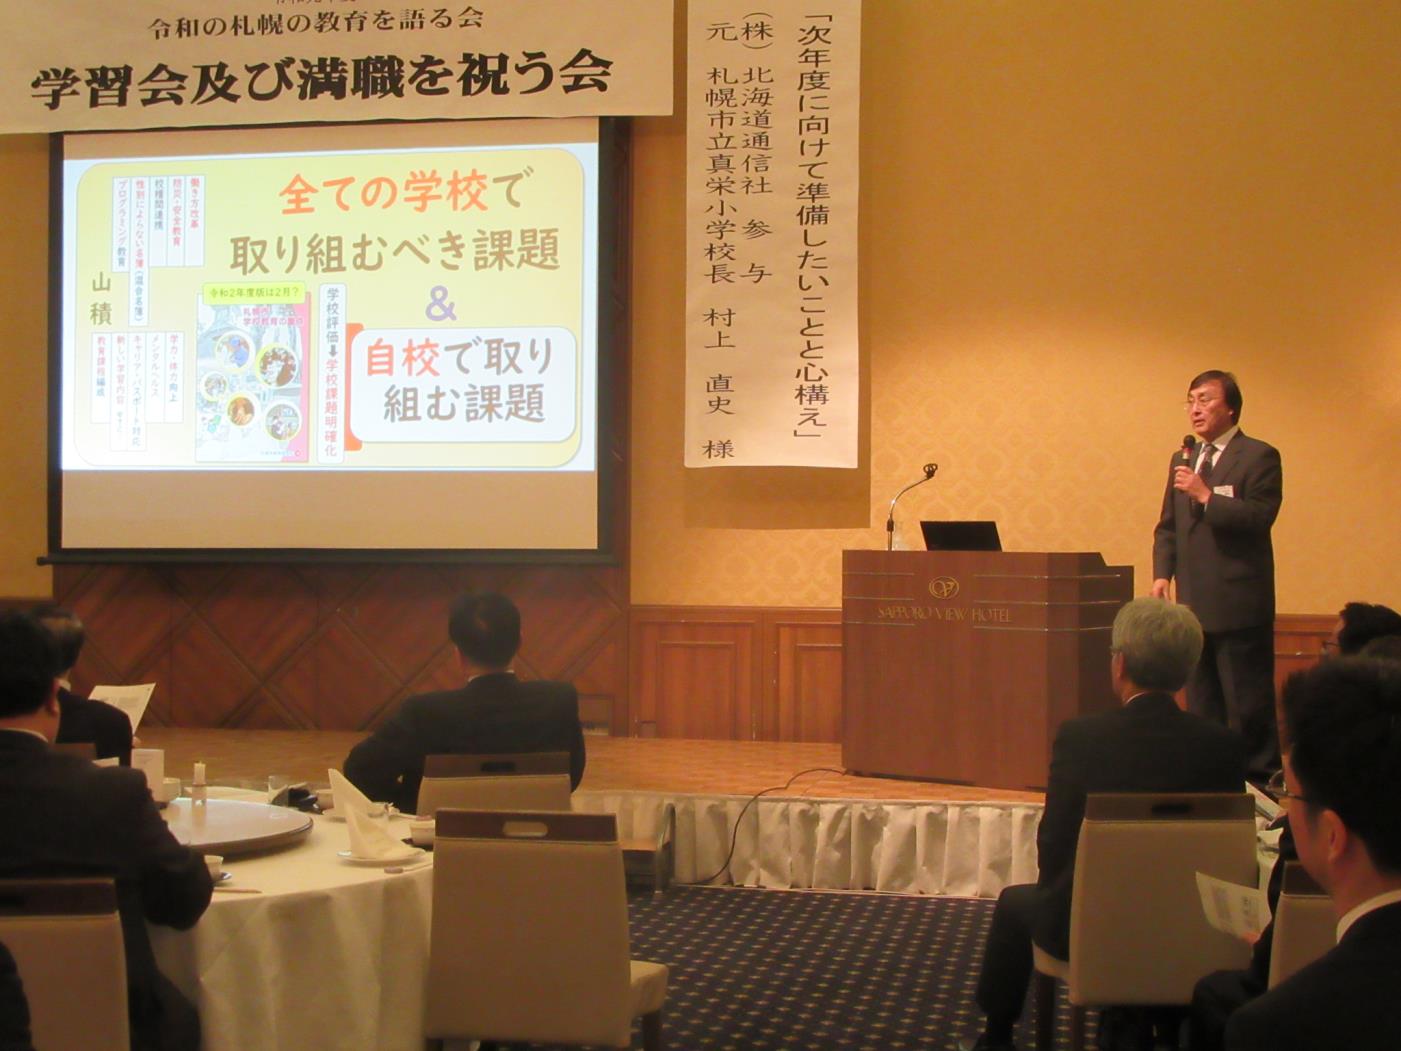 札幌の教育を語る会